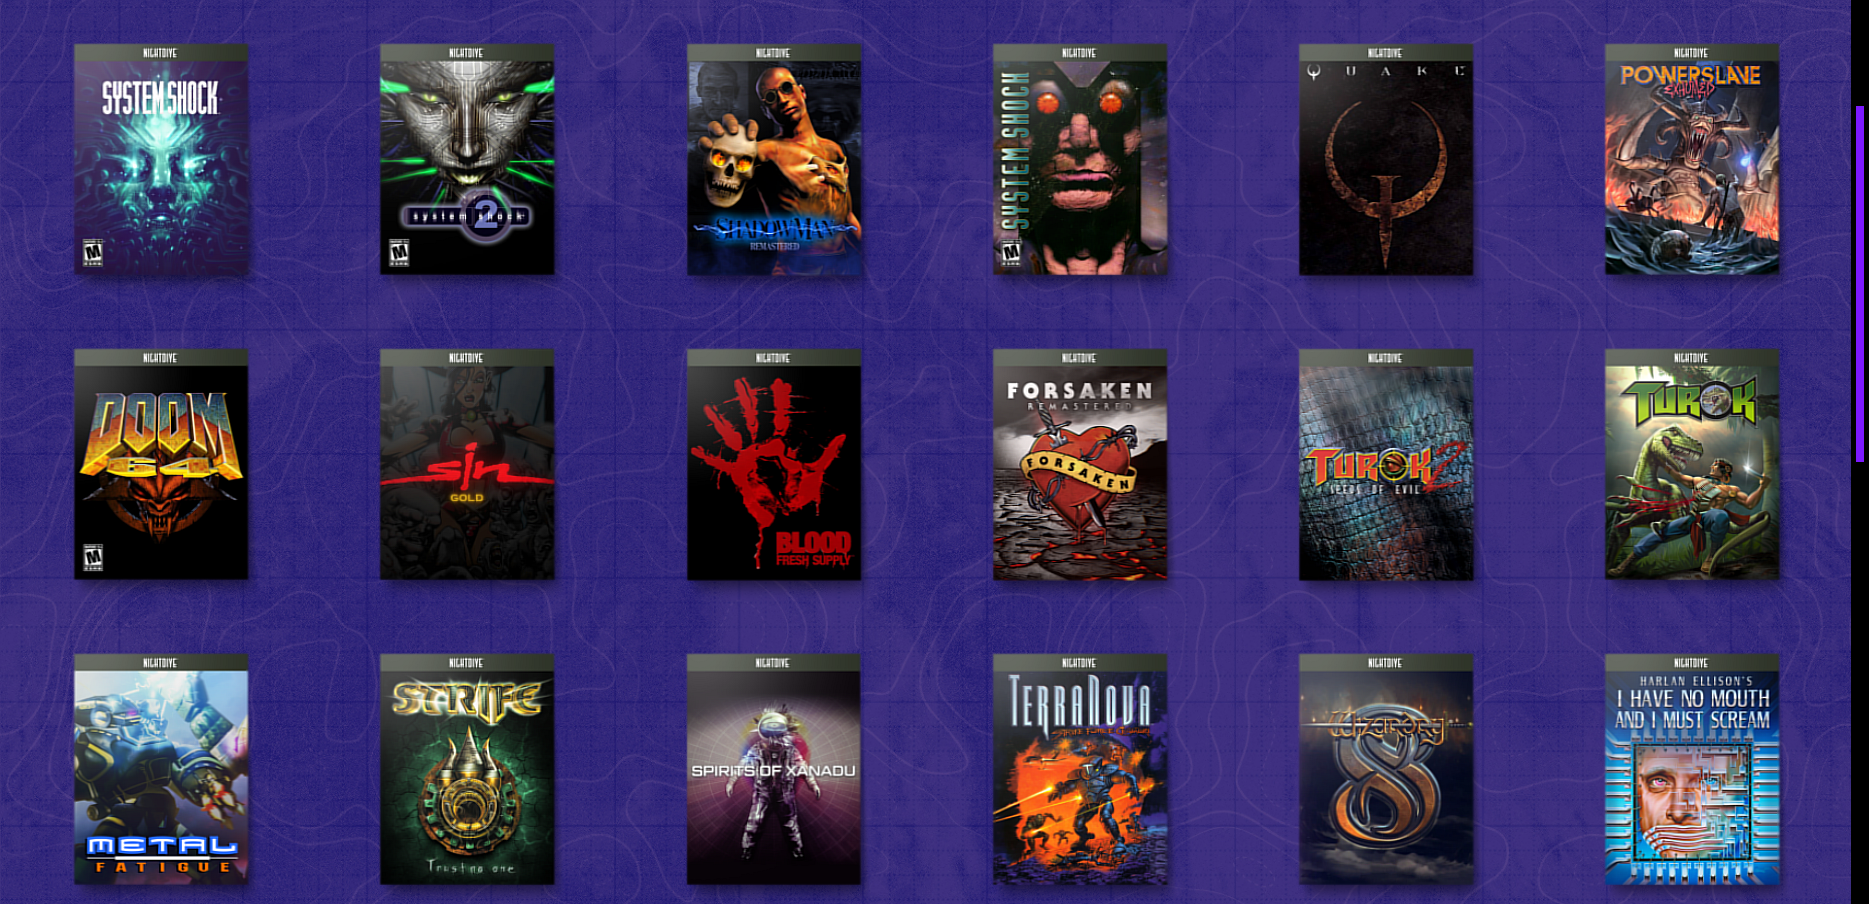 Imagem mostra alguns dos jogos retrô remasterizados pelos estúdios Nightdive